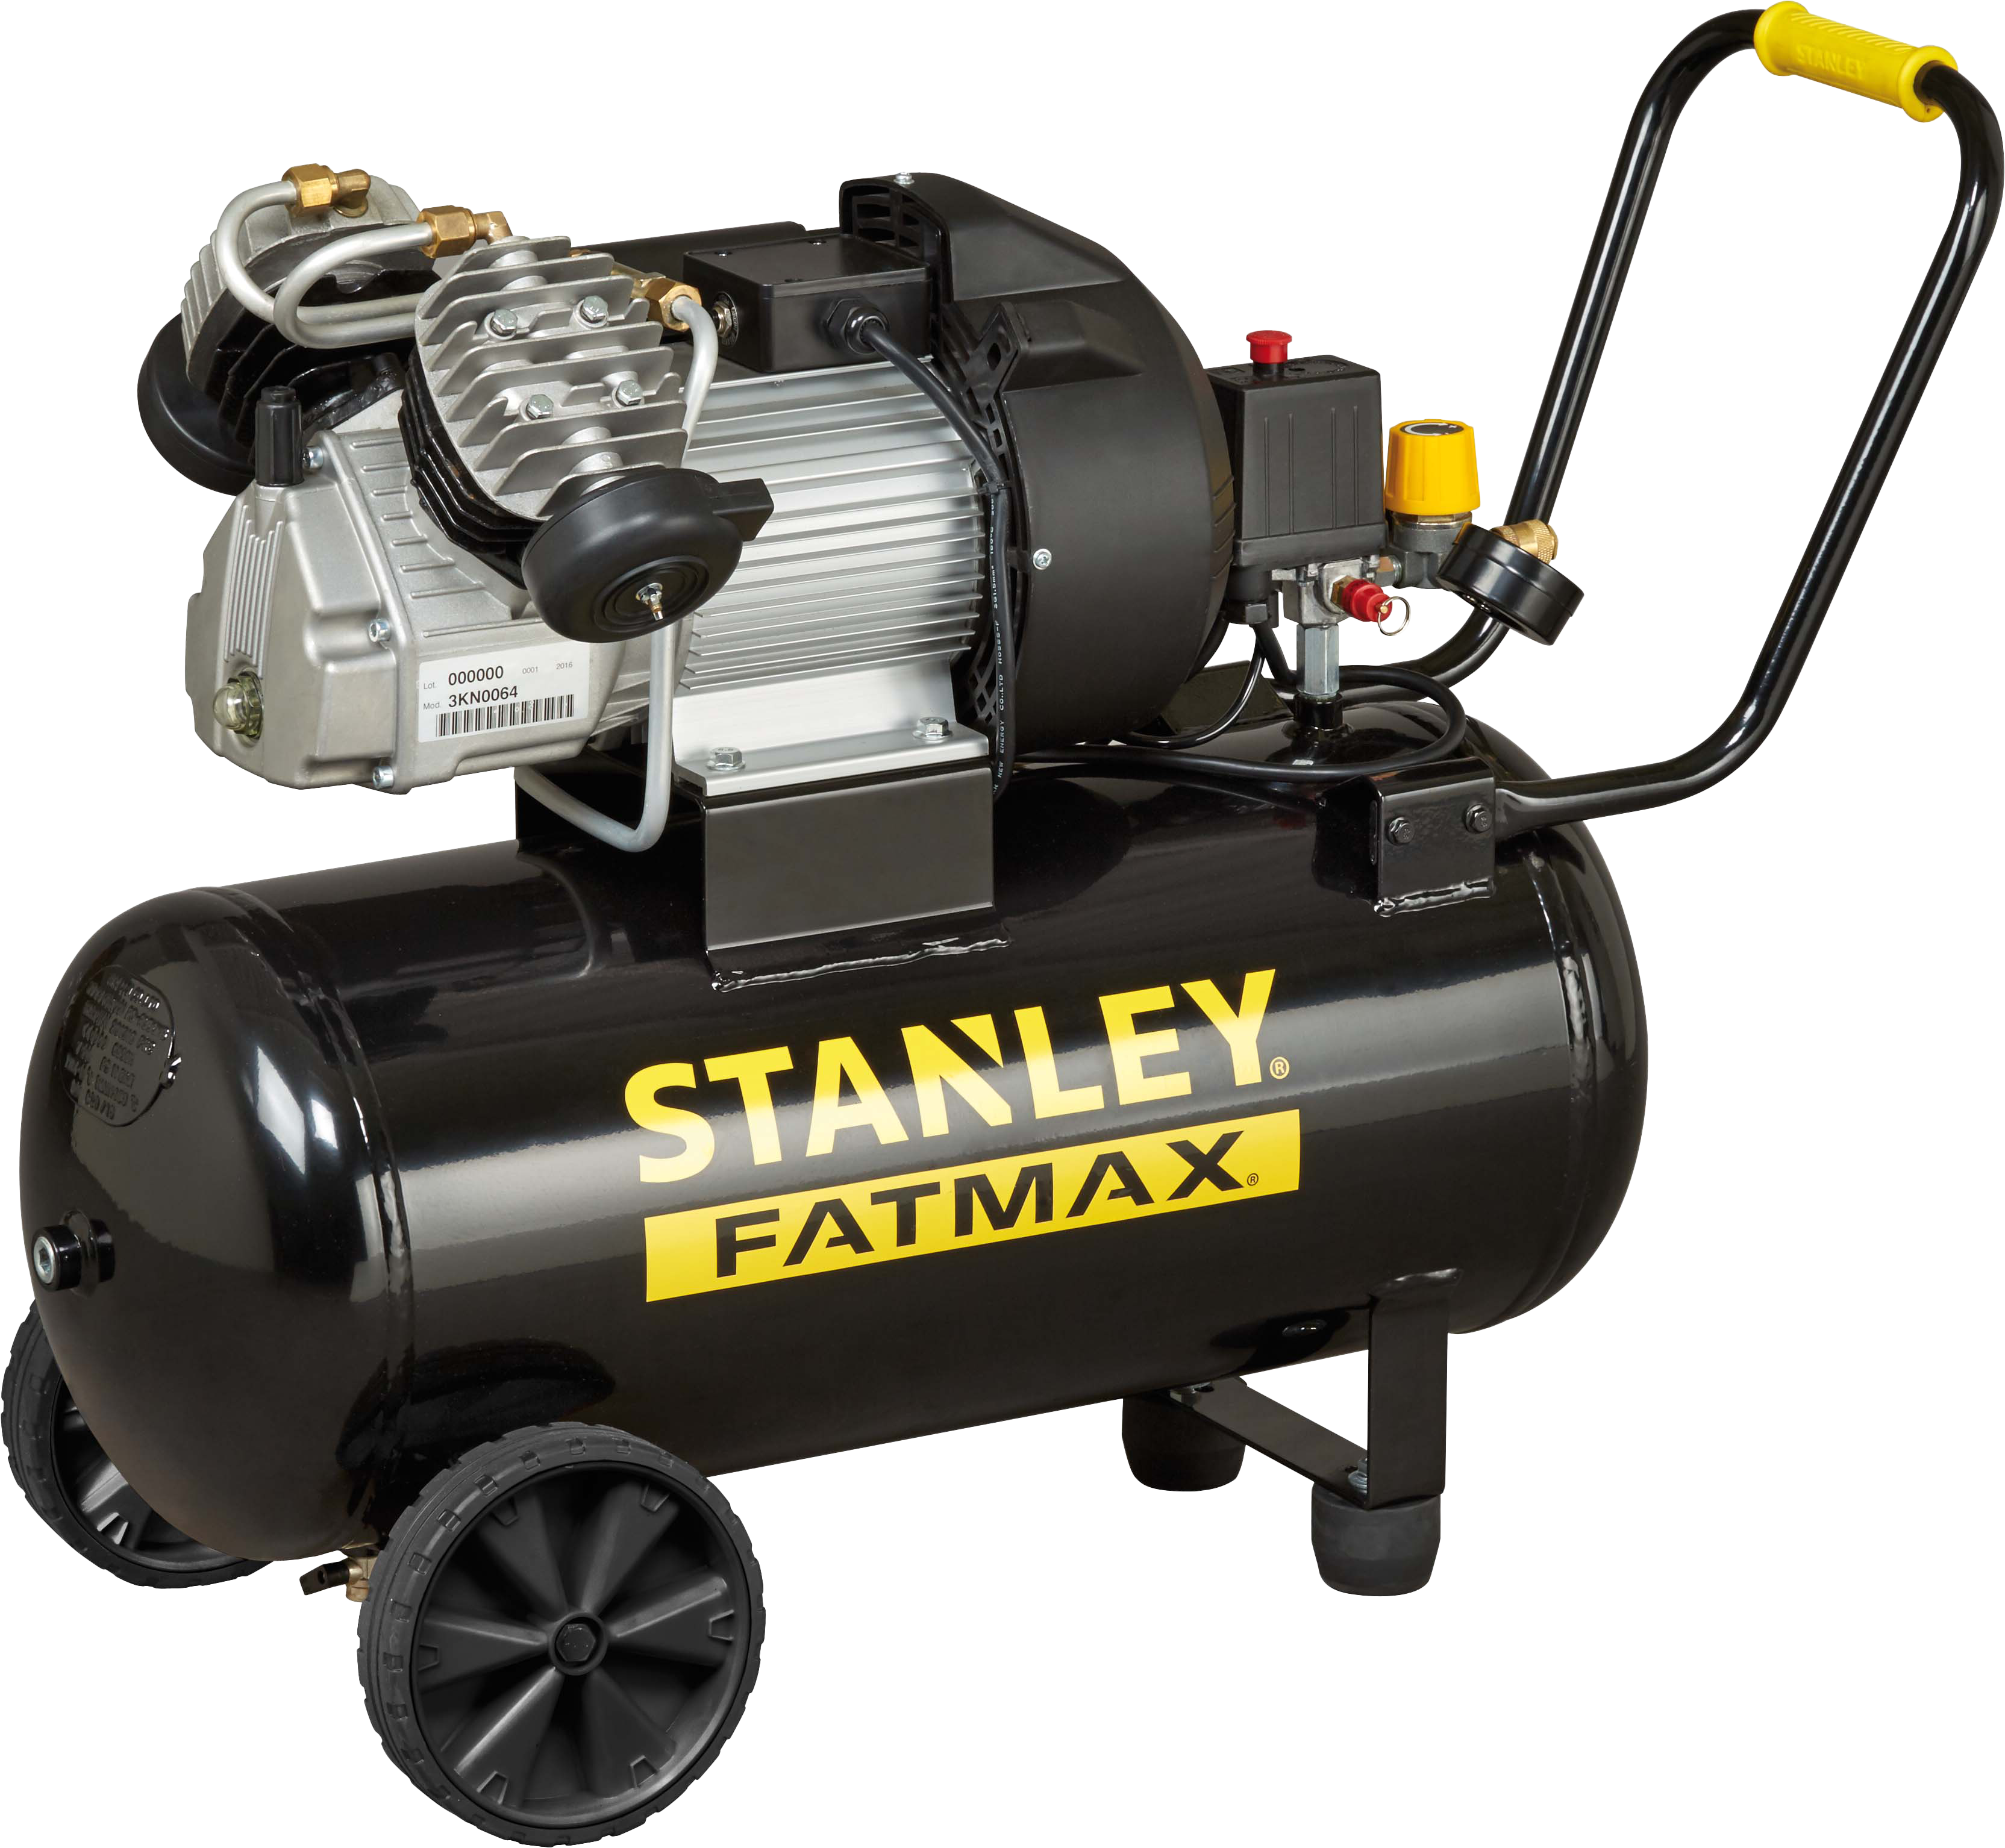 Compresor aceite stanley fatmax dv2 400/10/50 de 3 cv y 50l de depósito